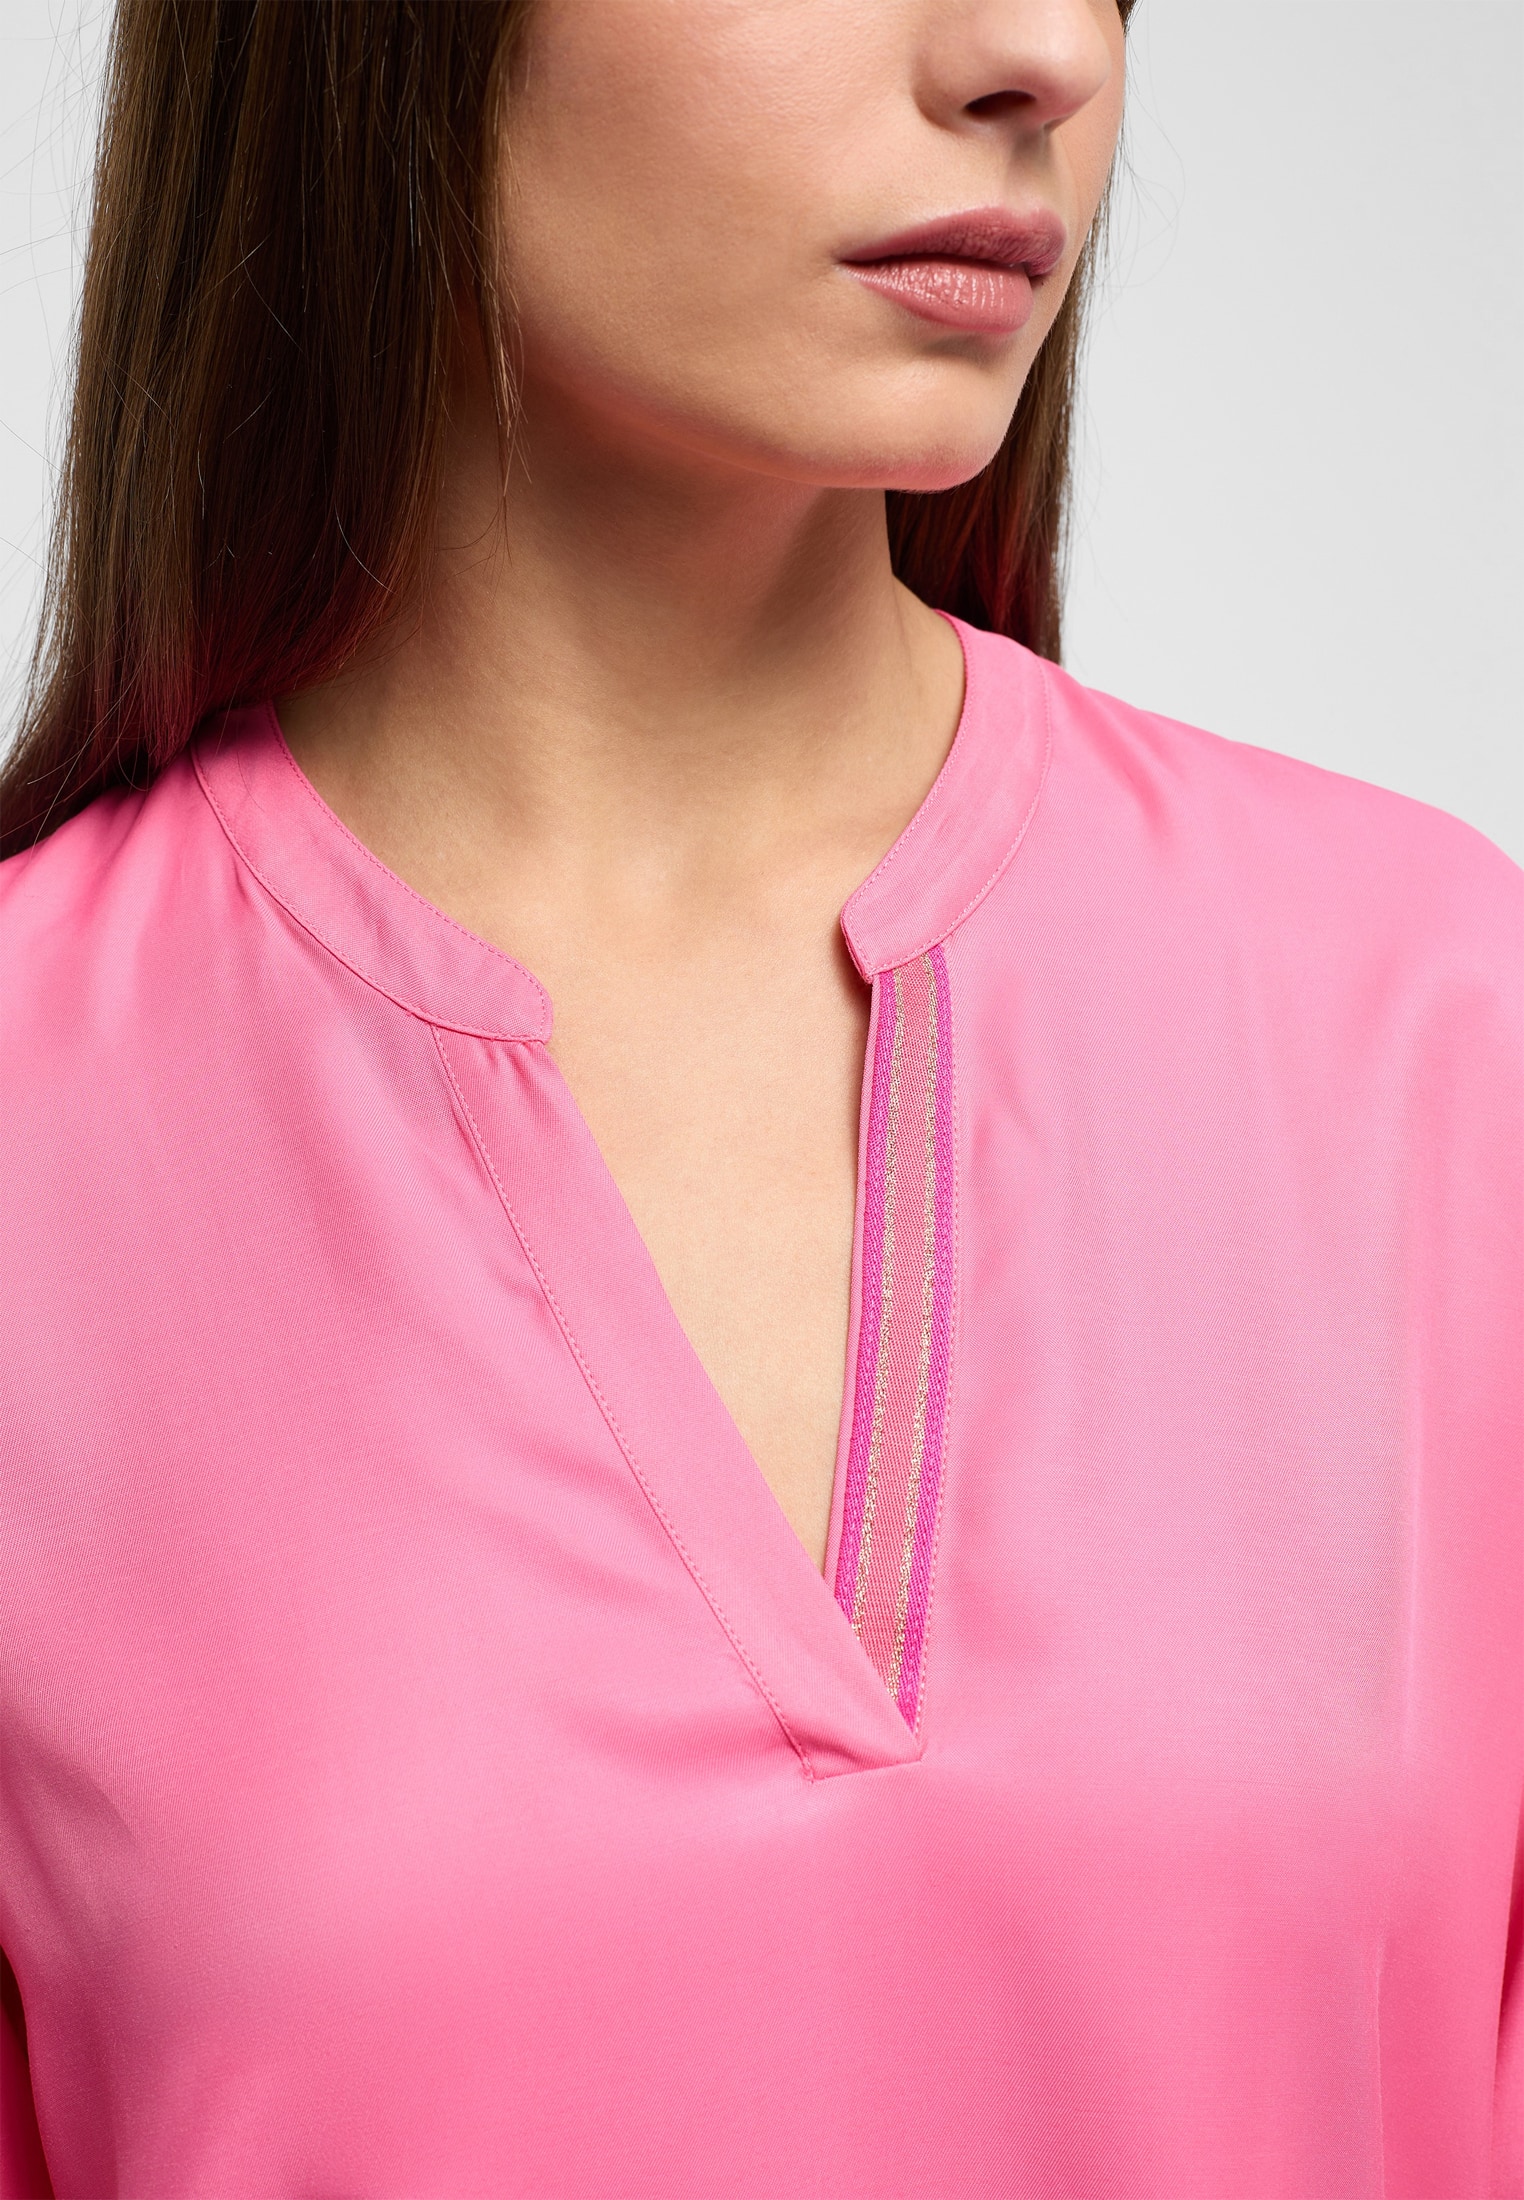 Viscose Shirt Langarm unifarben pink | 2BL04272-15-21-42-1/1 42 pink | | Bluse | in